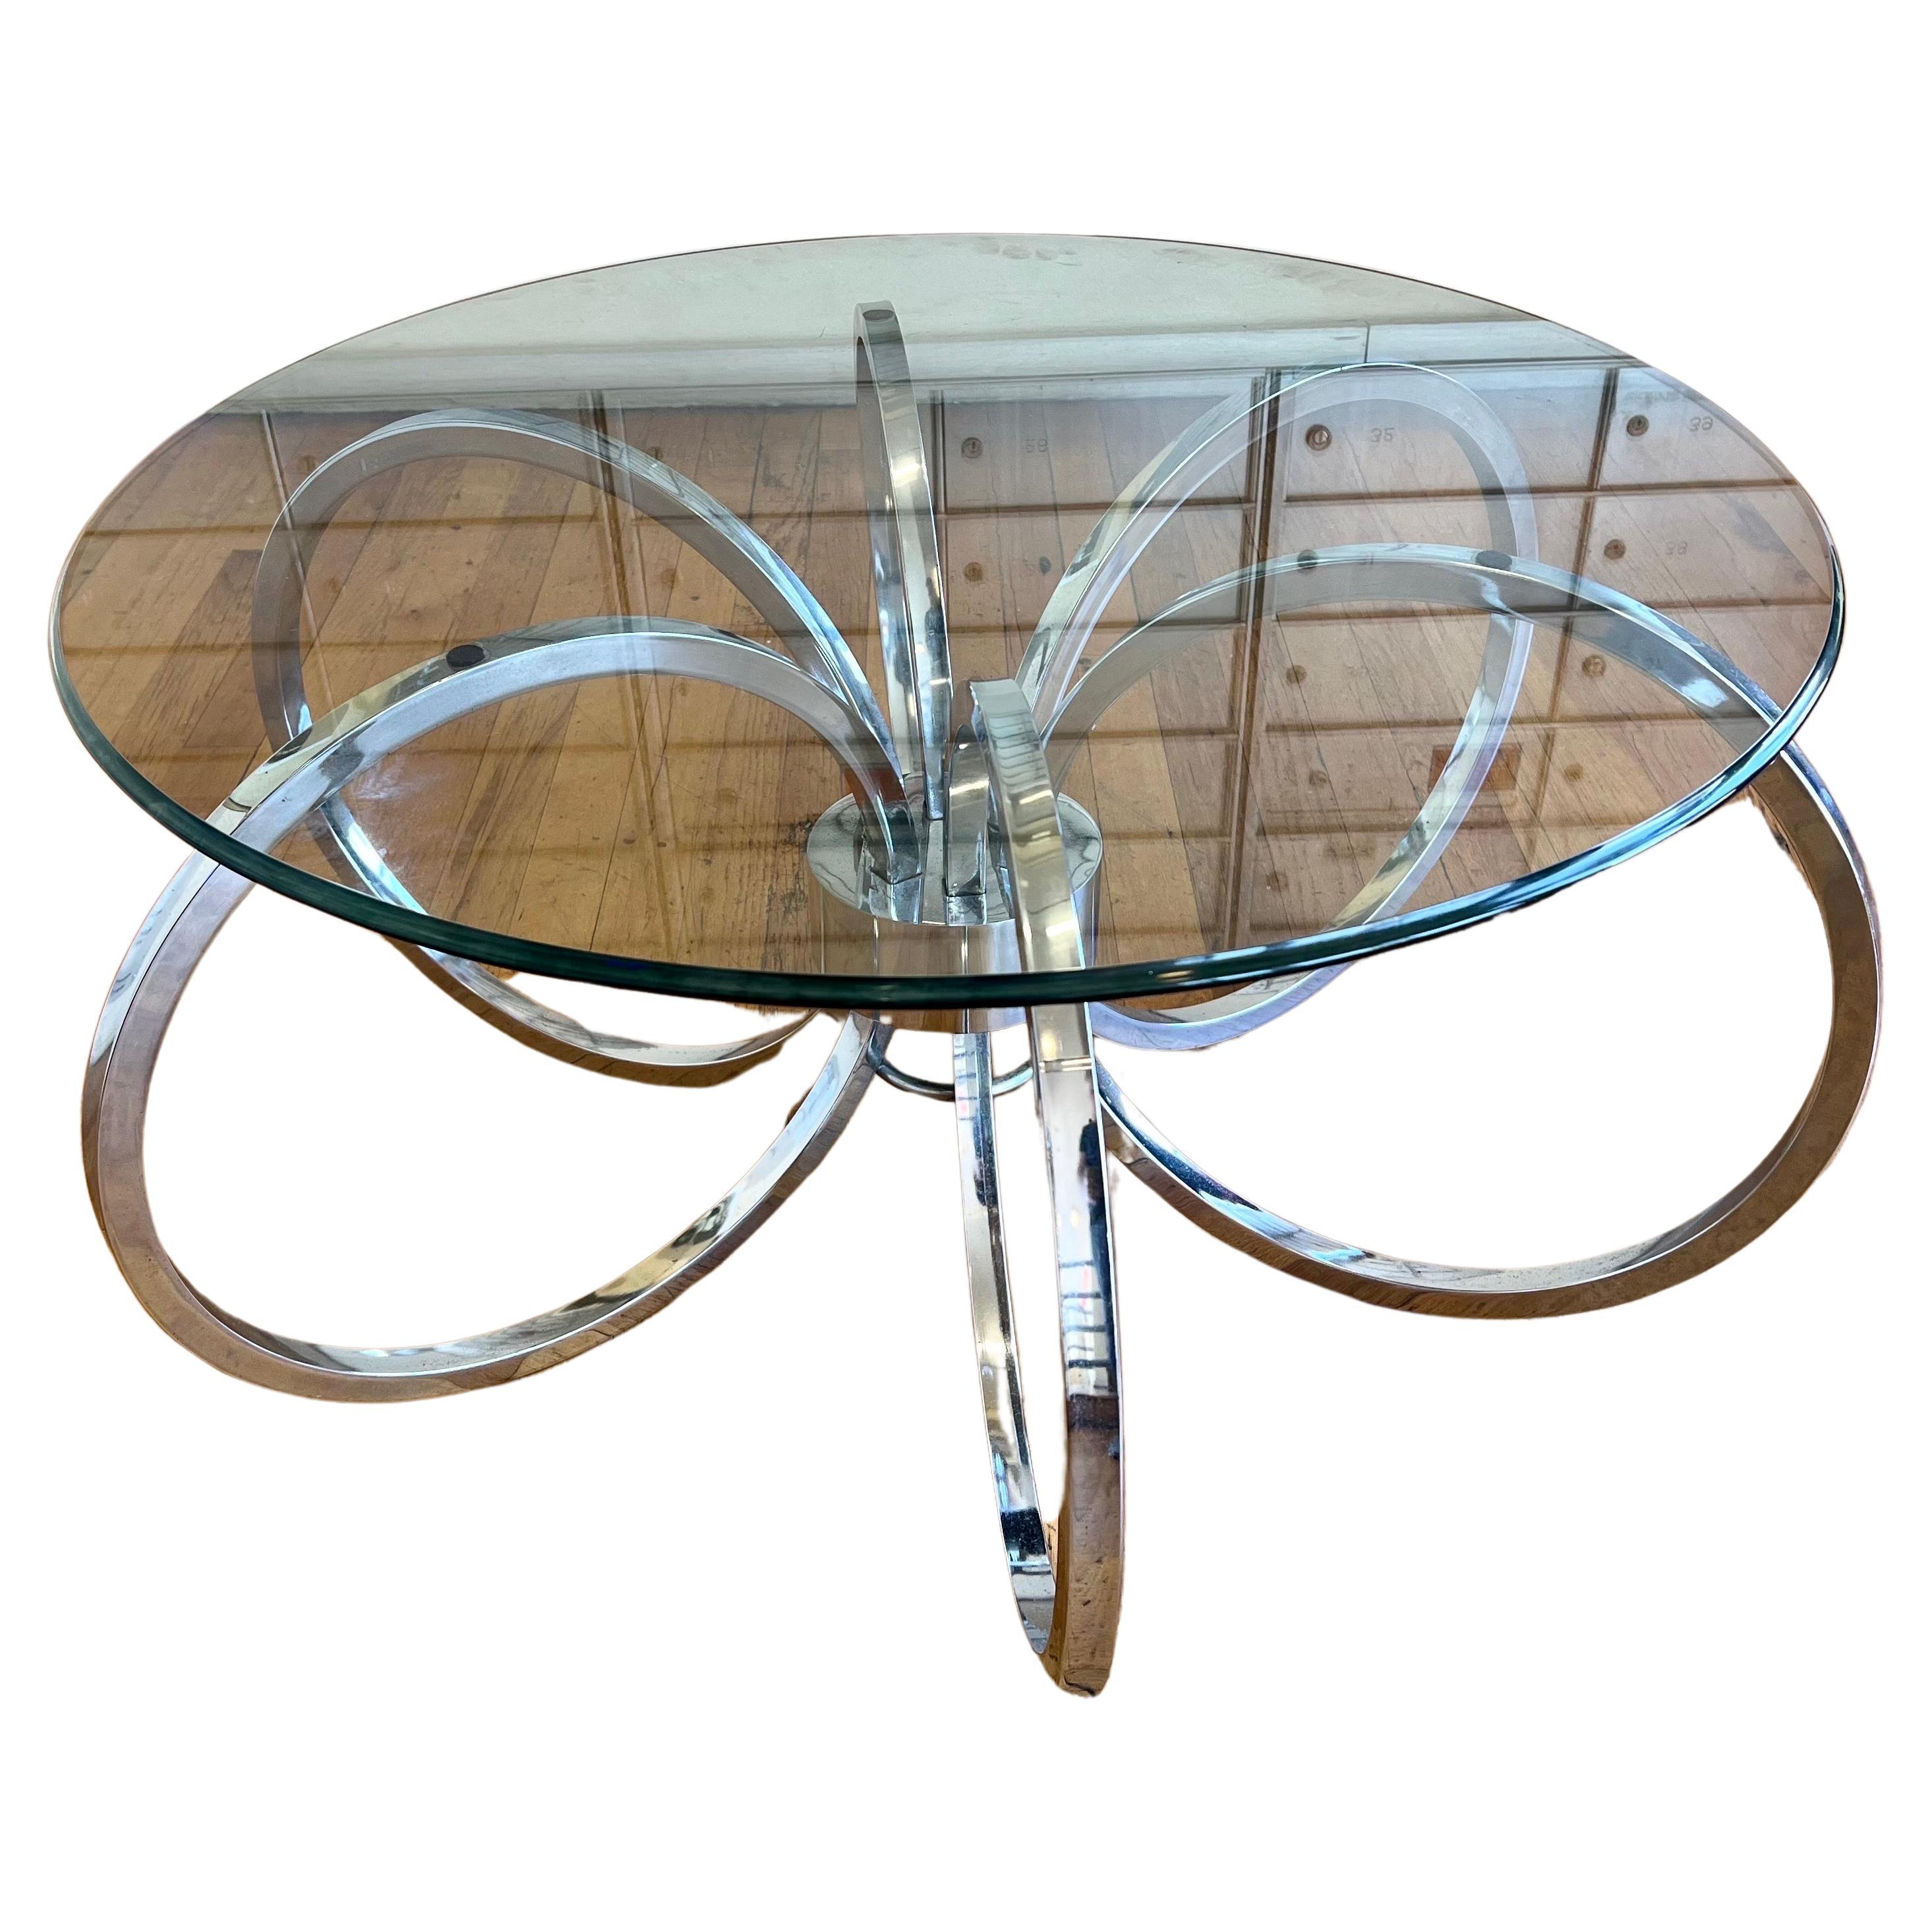 Cette table basse très cool et unique en chrome a été conçue par Milo Baughman, pour le Design Institute of America vers les années 1980, nous avons poli la base, et nous incluons le plateau en verre pour des raisons d'expédition vous pouvez mettre